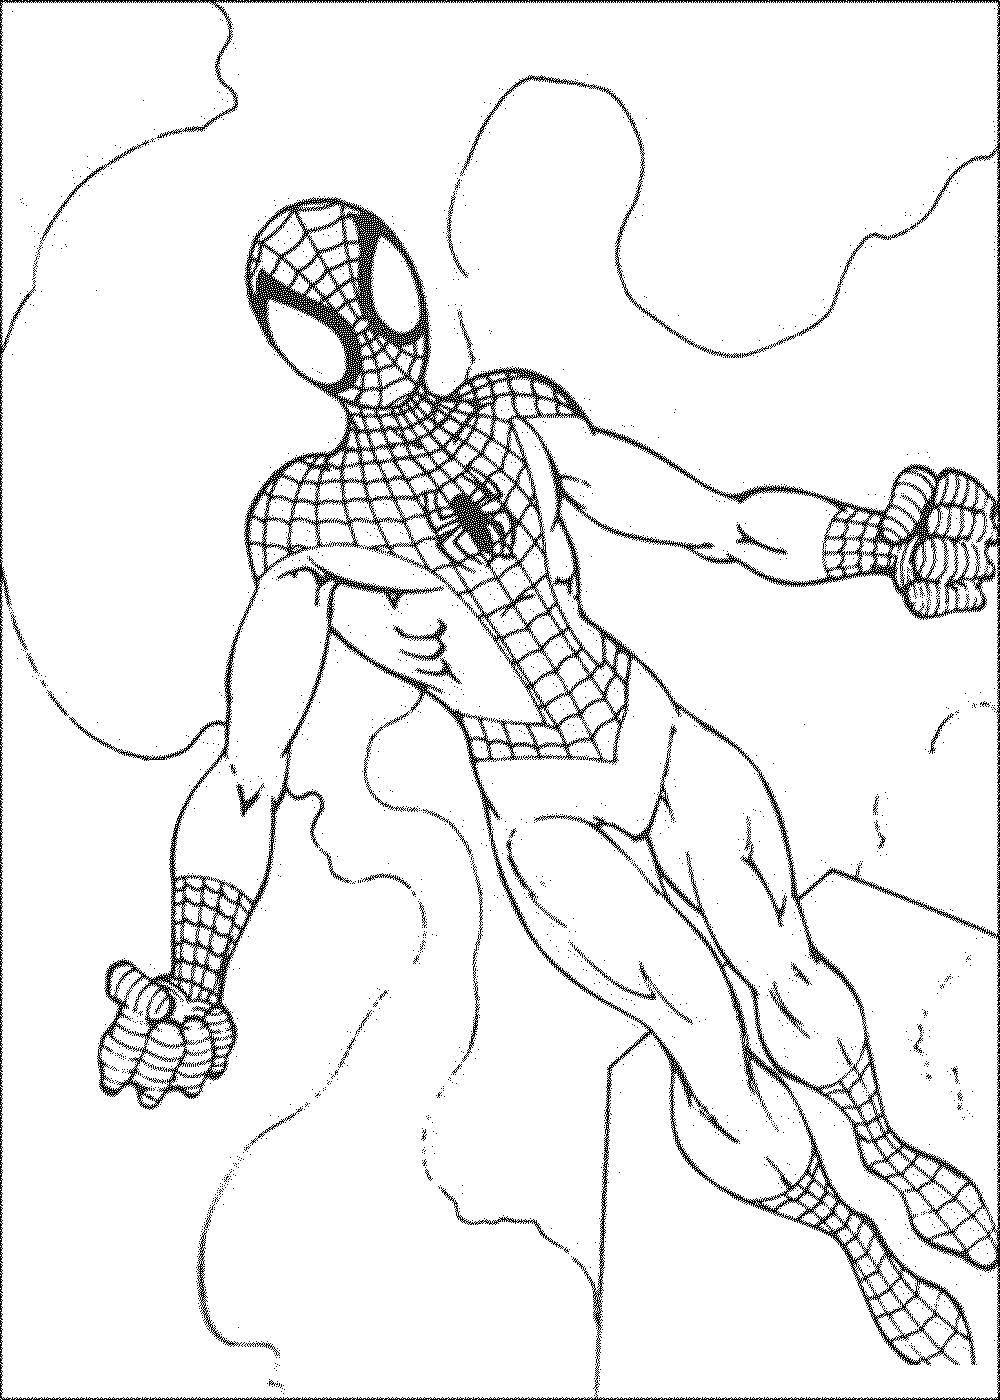 Название: Раскраска Человек паук. Категория: супергерои. Теги: Паук, супергерои.